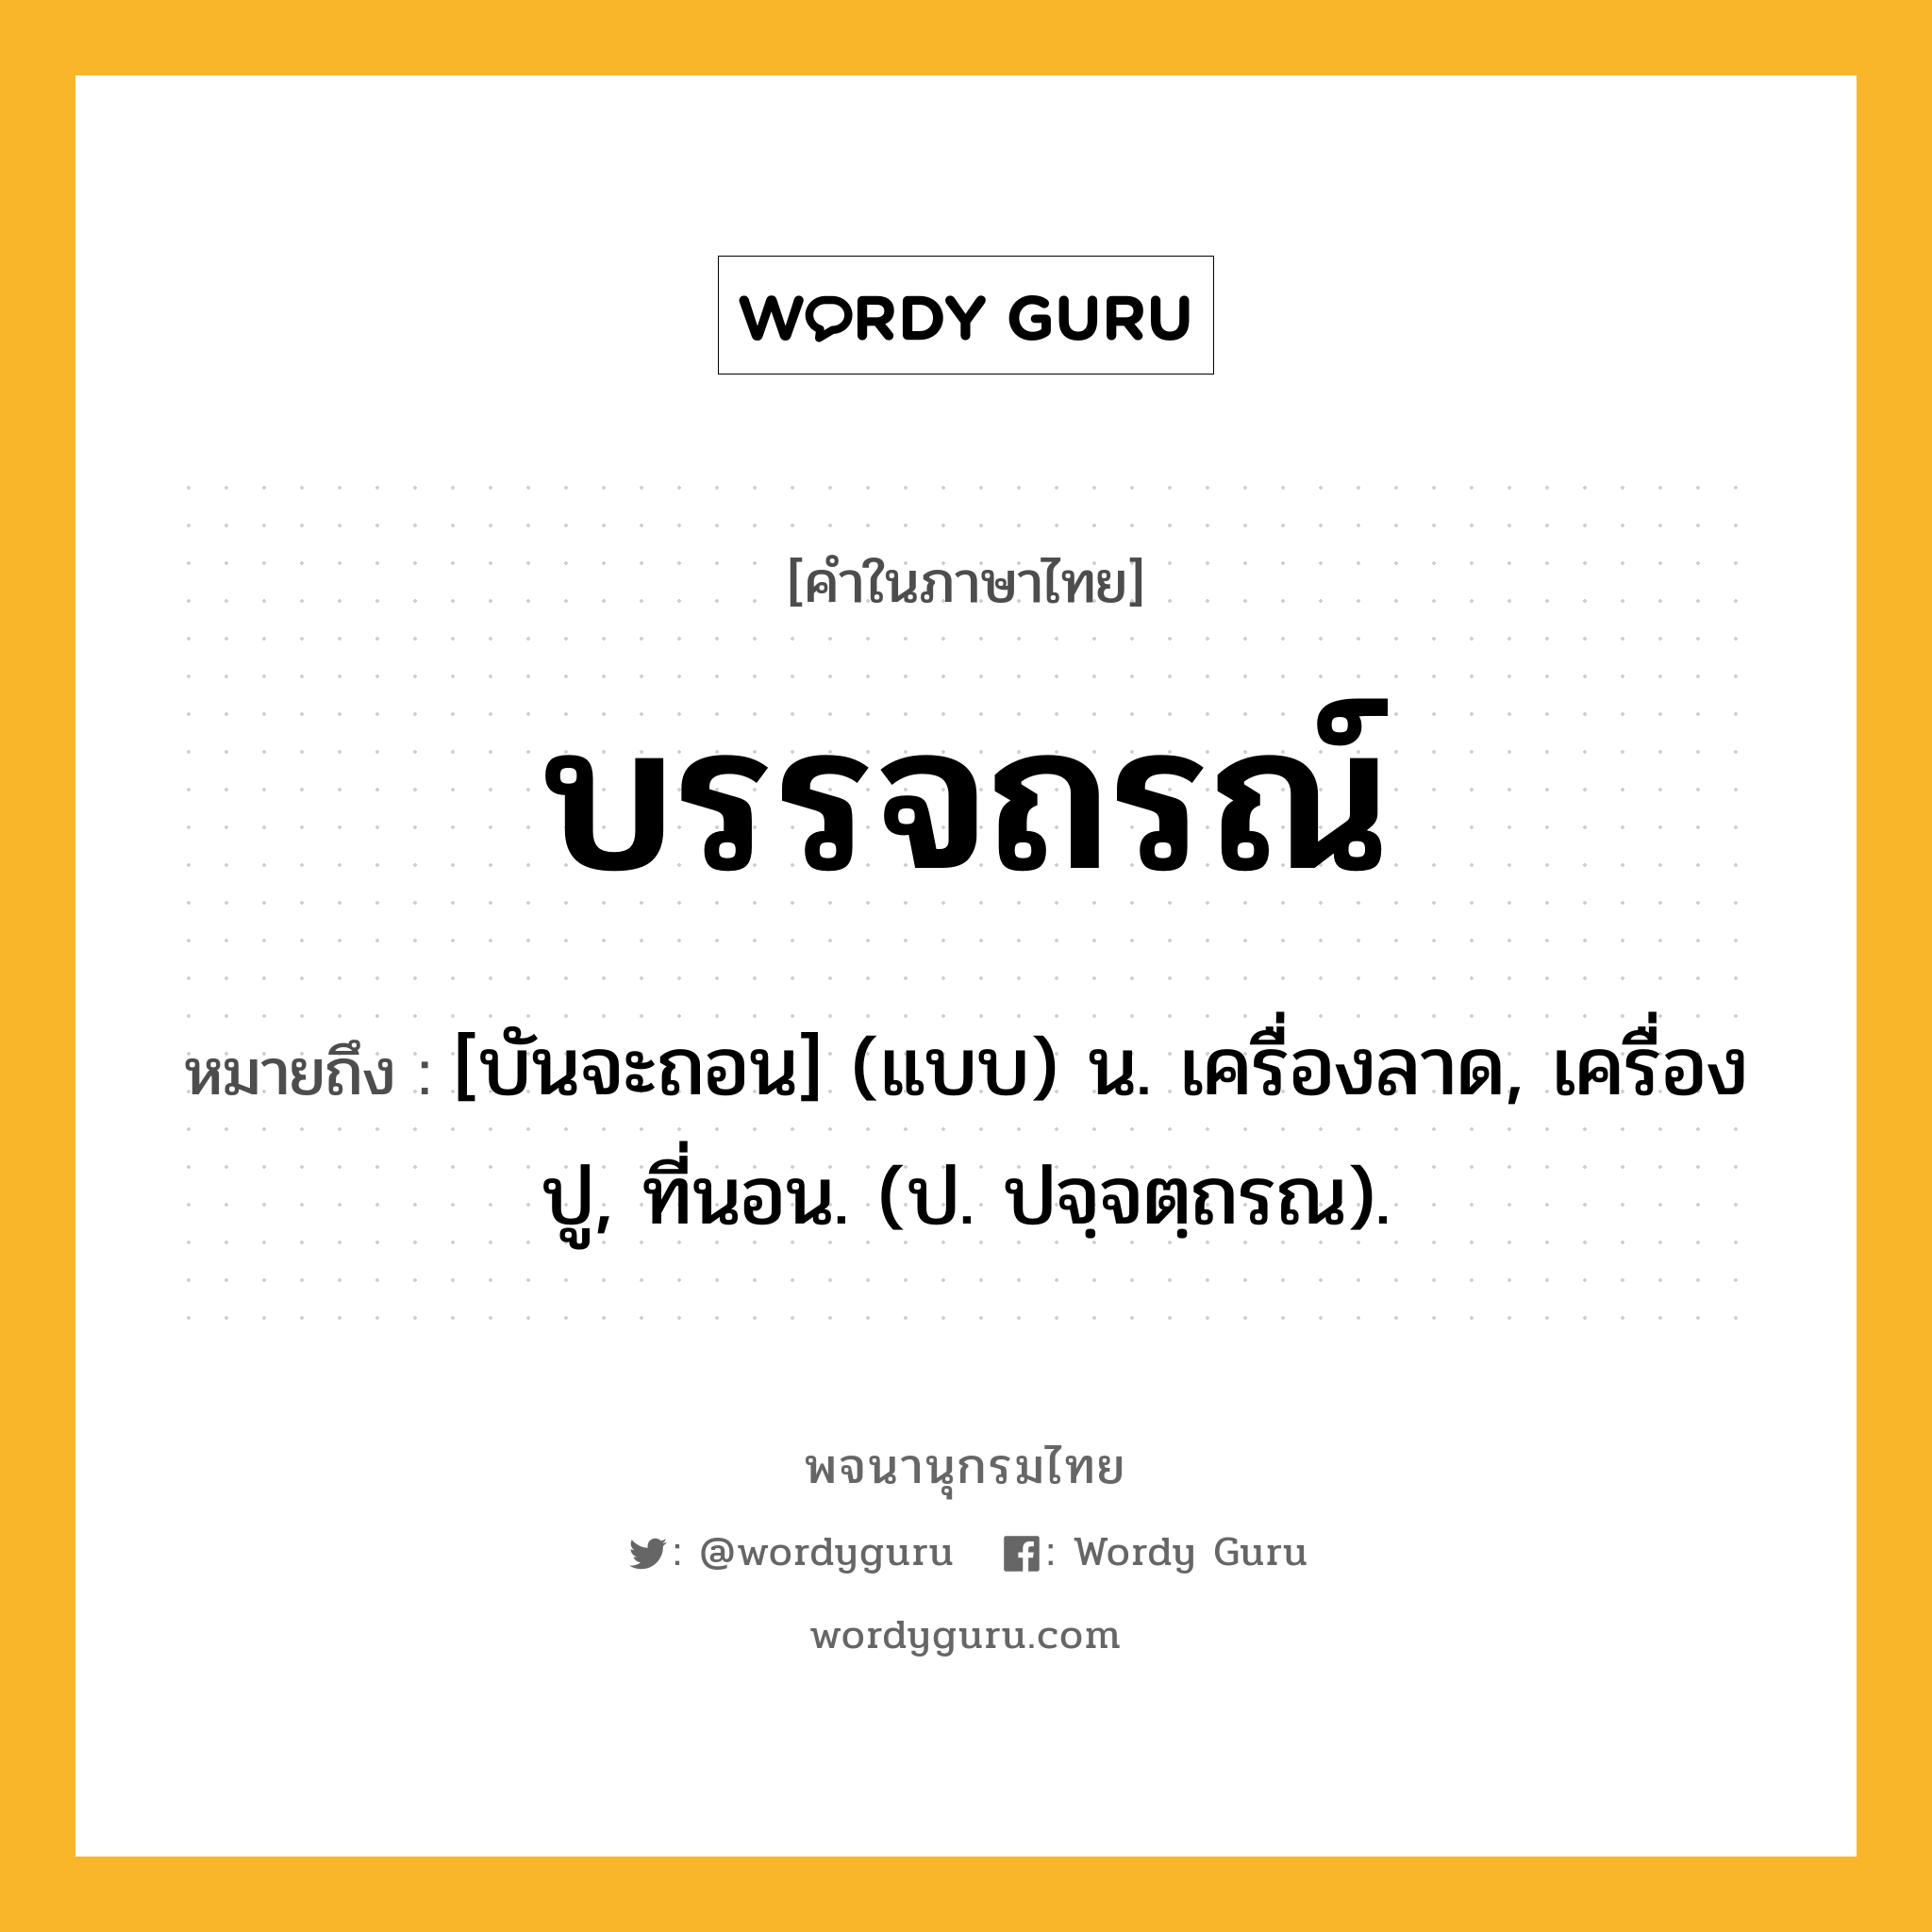 บรรจถรณ์ ความหมาย หมายถึงอะไร?, คำในภาษาไทย บรรจถรณ์ หมายถึง [บันจะถอน] (แบบ) น. เครื่องลาด, เครื่องปู, ที่นอน. (ป. ปจฺจตฺถรณ).